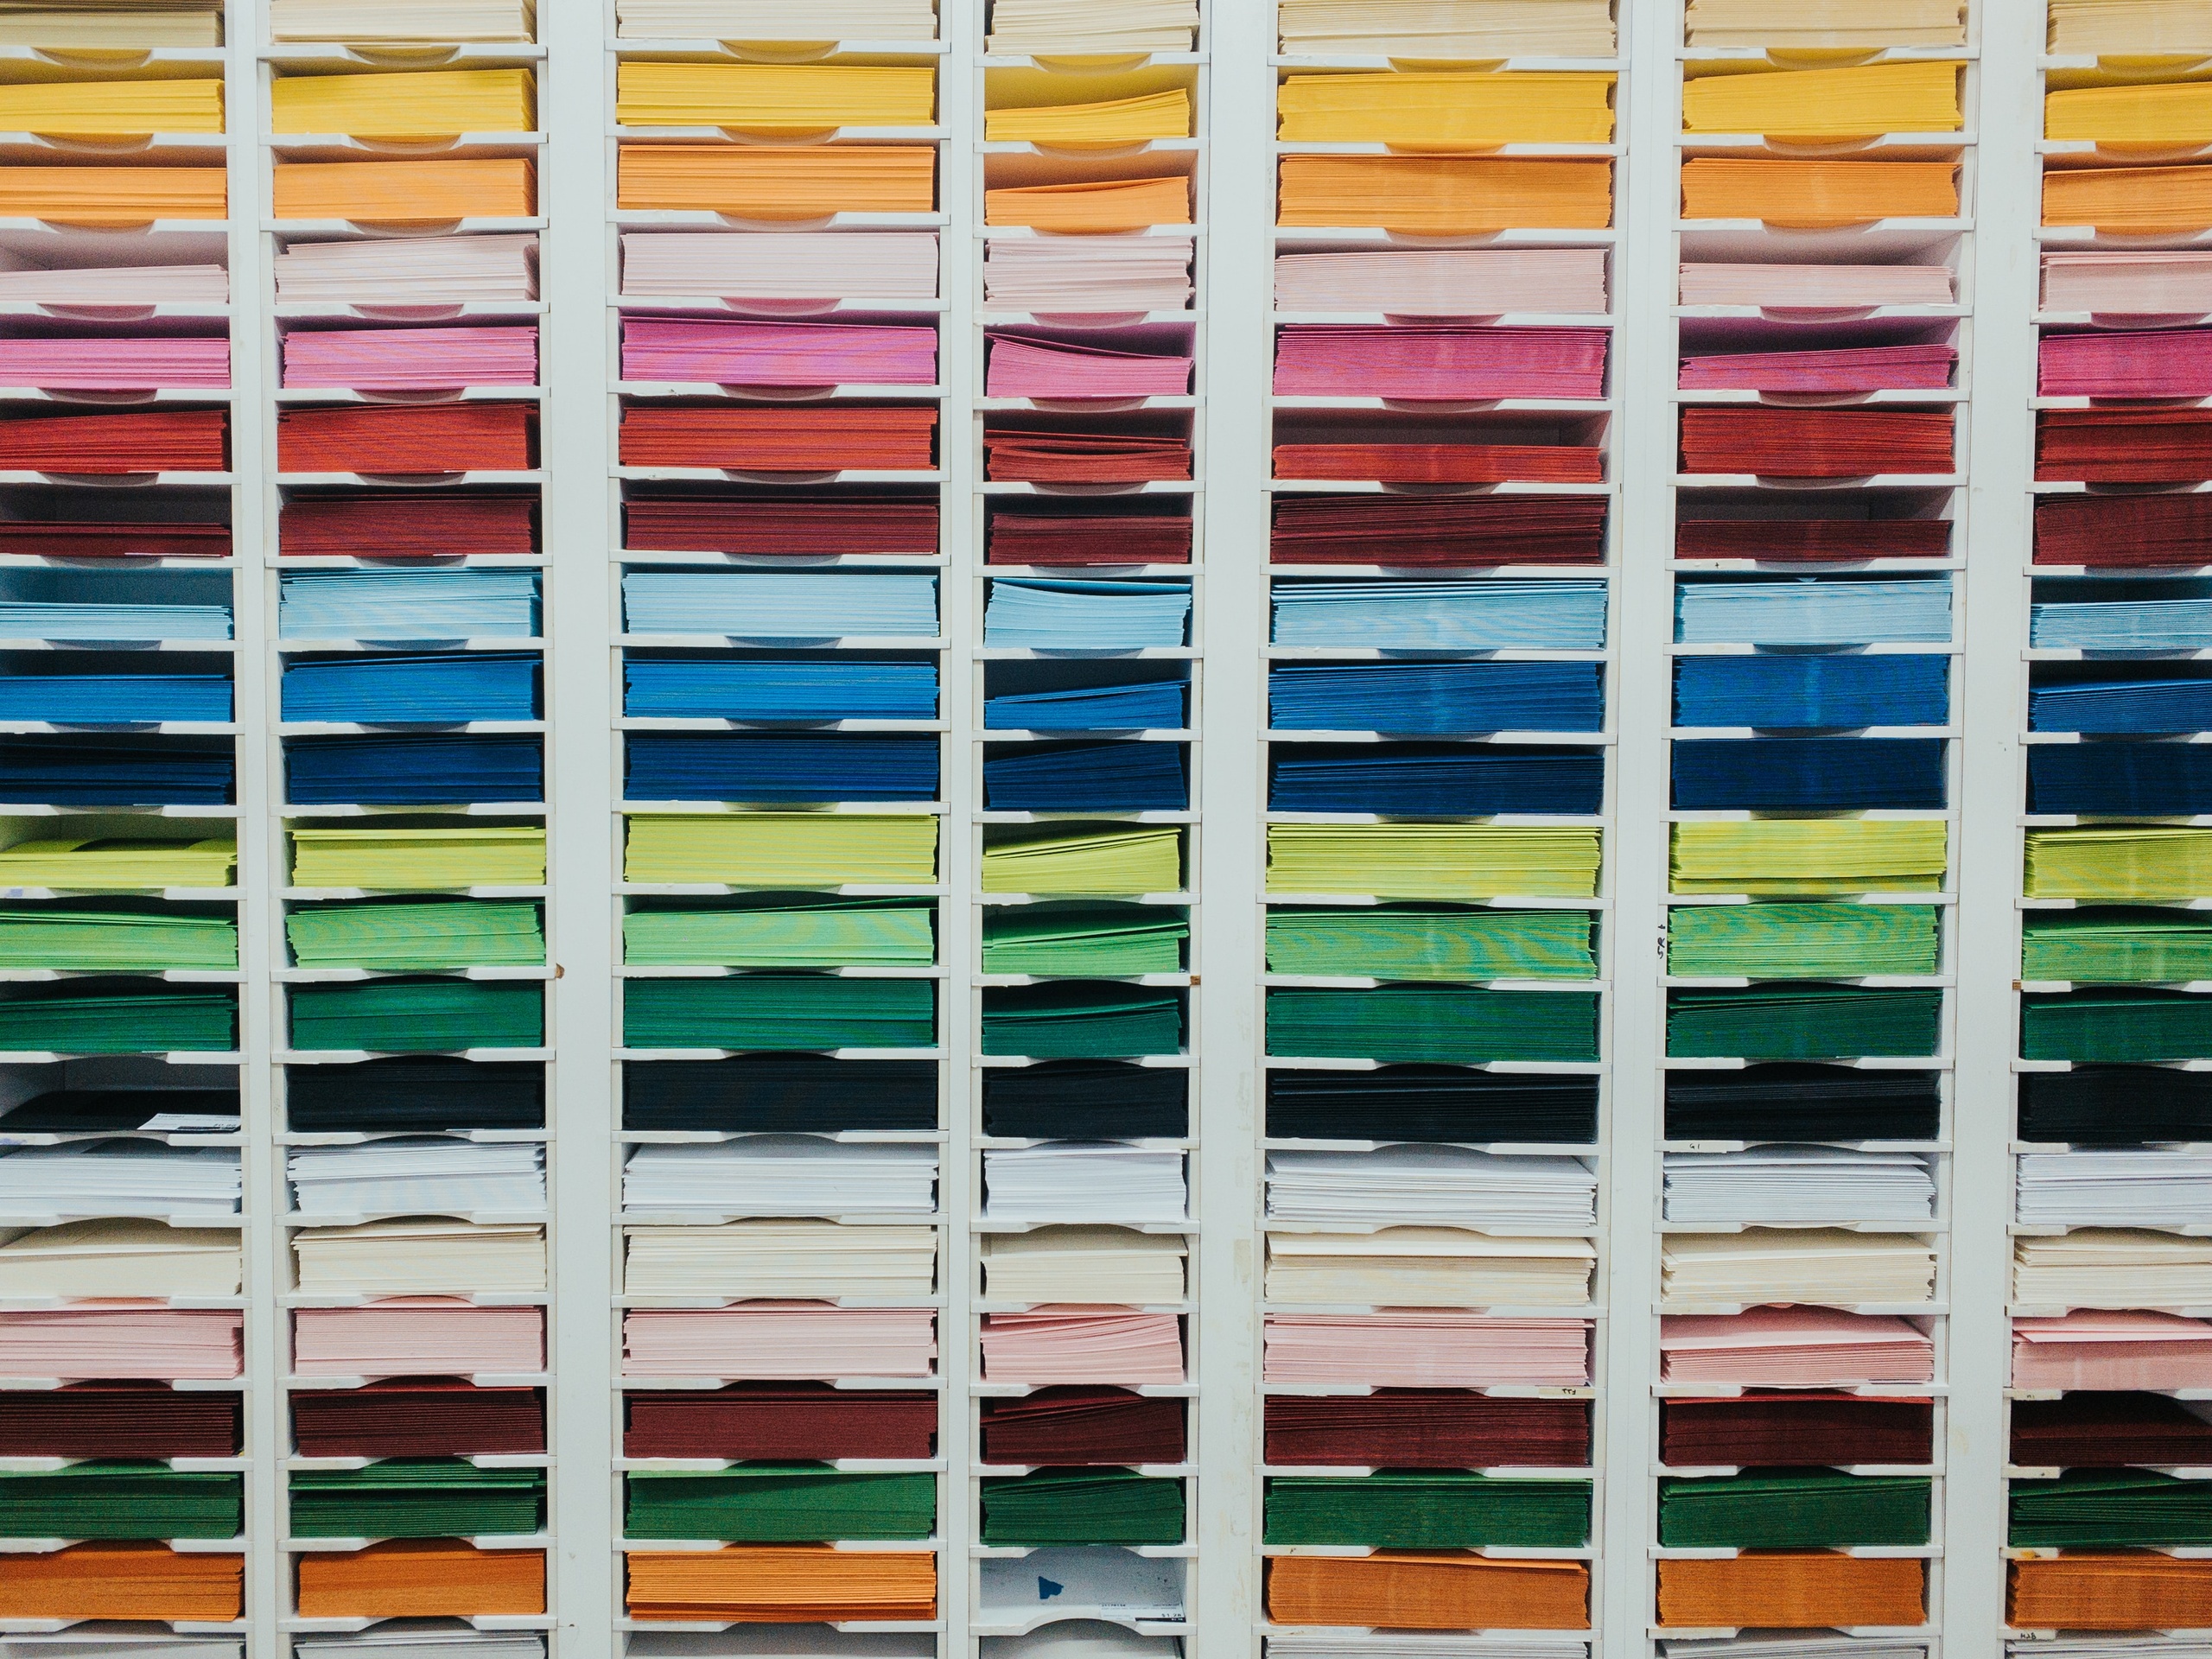 Papier in Regal nach Farben geordnet